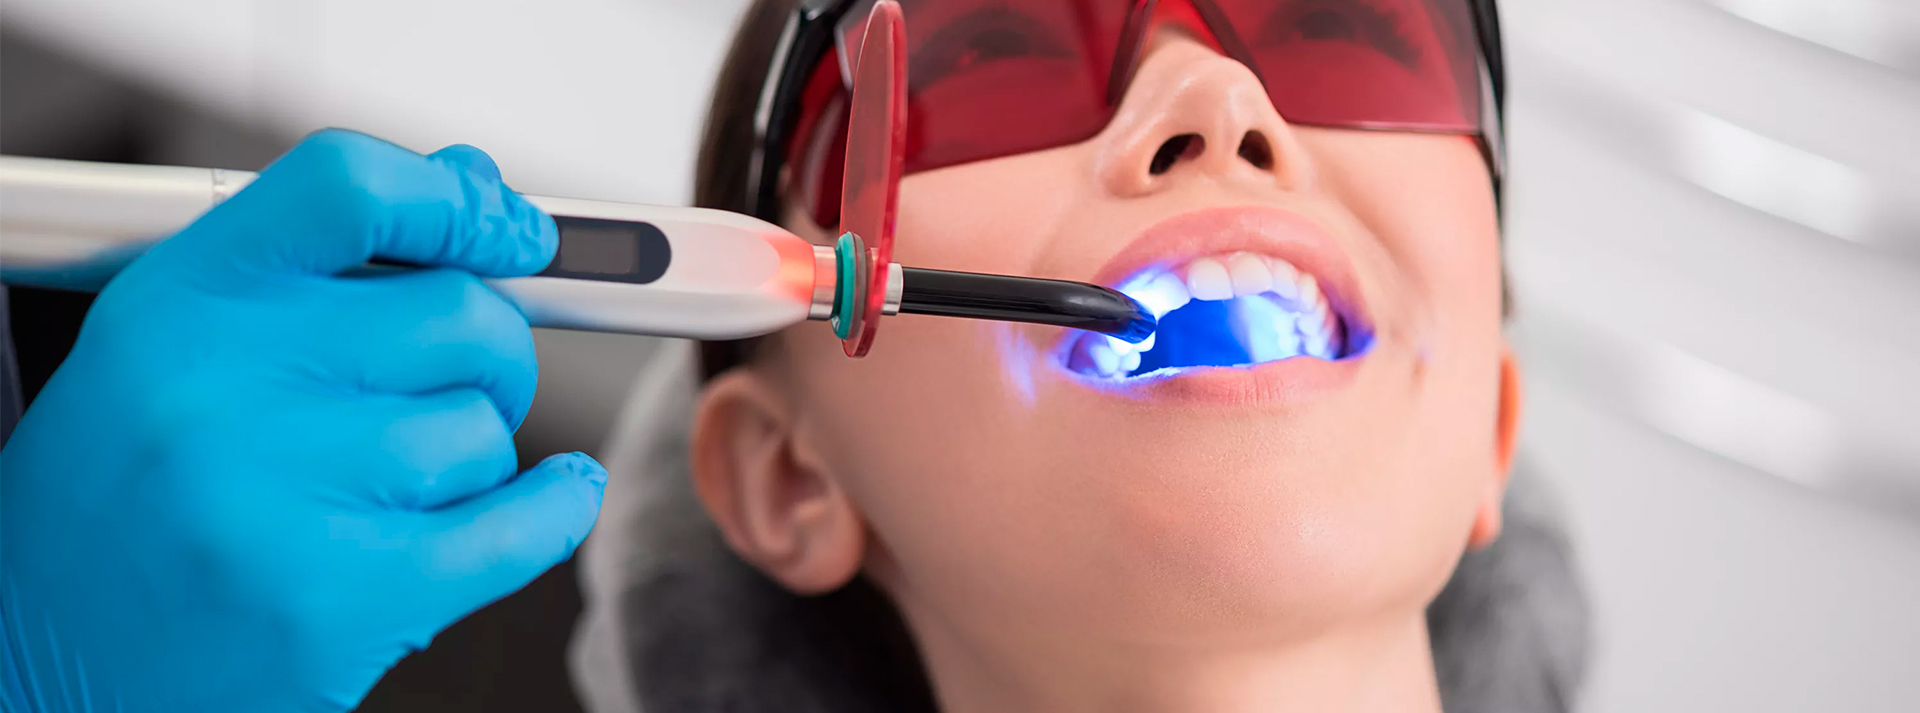 Детская стоматология отбеливание зубов электрические зубные щетки купить в м видео